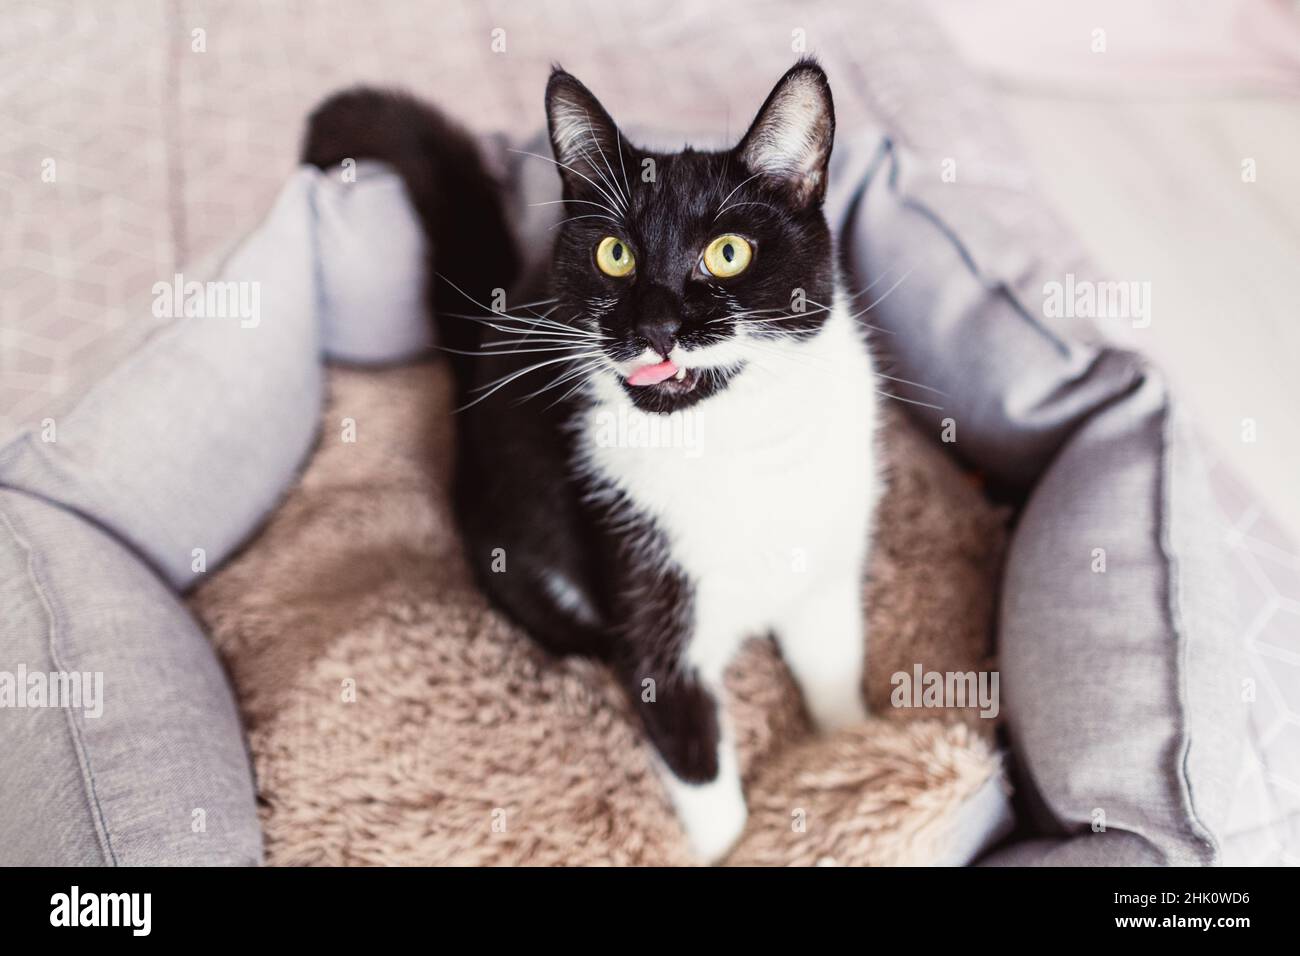 Magnifique jeune chat noir et blanc de couleur inhabituelle regardant vers le haut, léchant ses lèvres, assis dans un lit d'animal de compagnie, vue de dessus.Chaton noir avec des whiskers blancs.ECO Banque D'Images